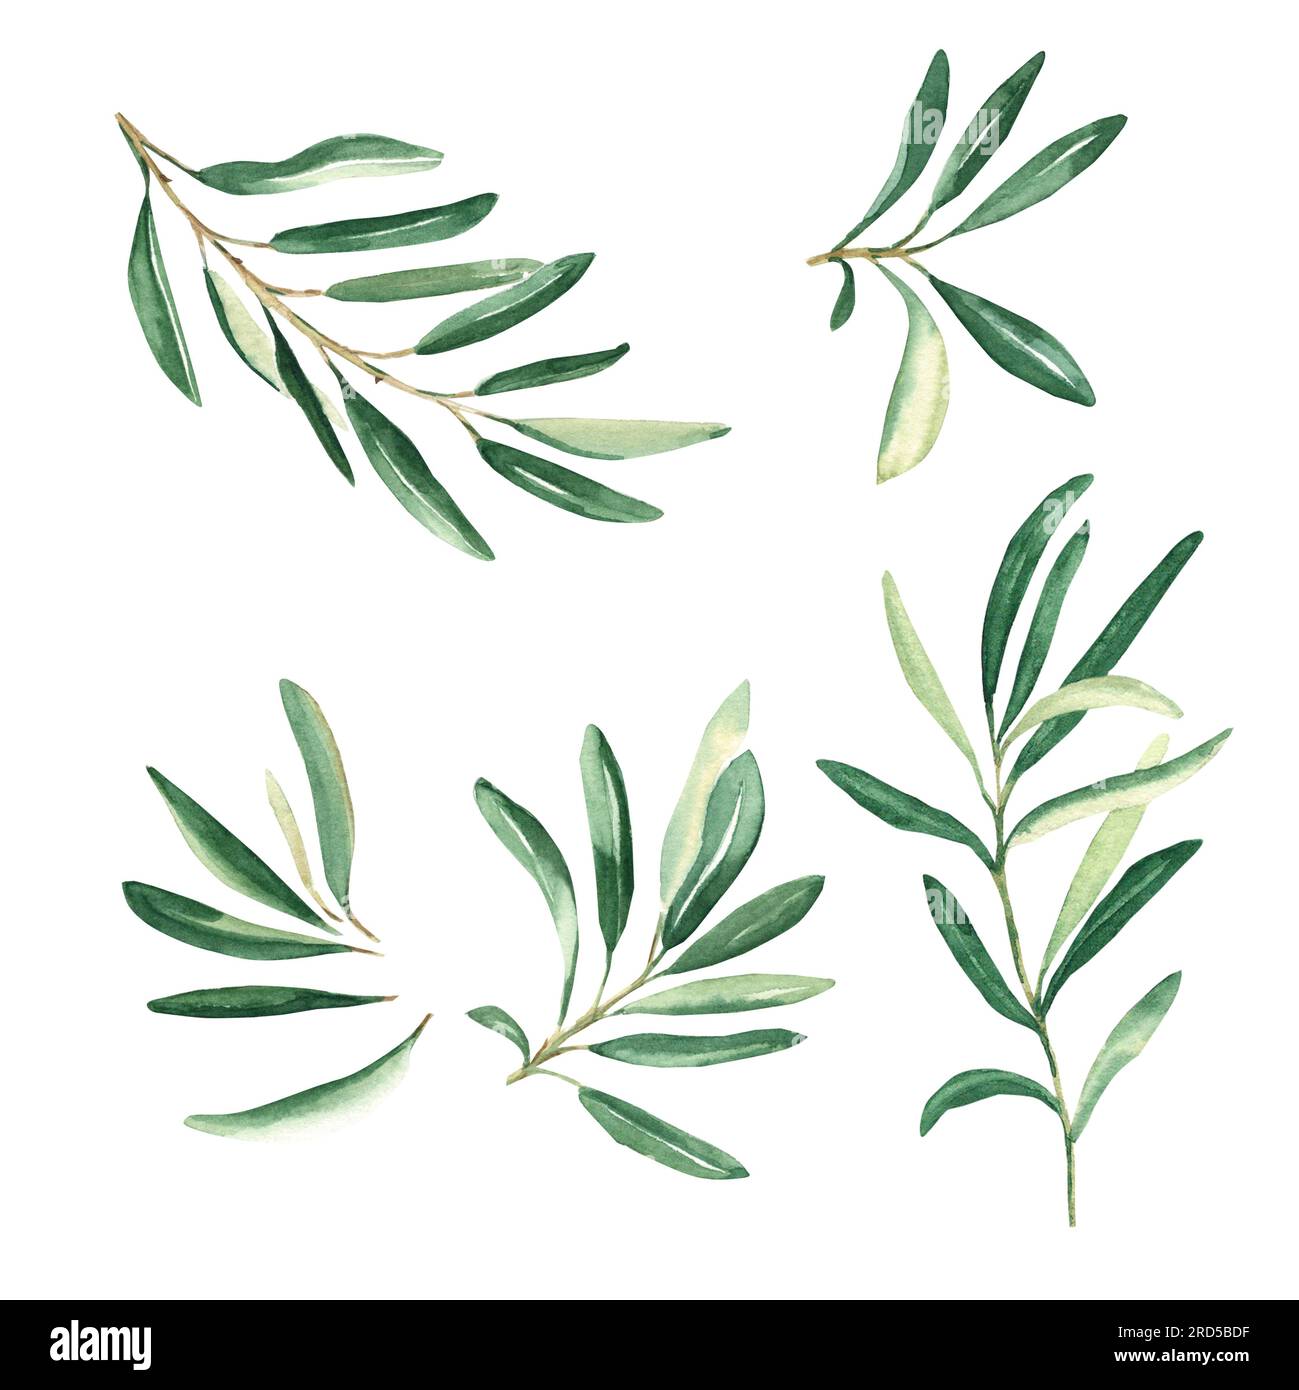 Rami di ulivo isolati su sfondo bianco. Acquerello illustrazione botanica disegnata a mano. Può essere utilizzato per schede, loghi e design della confezione Foto Stock